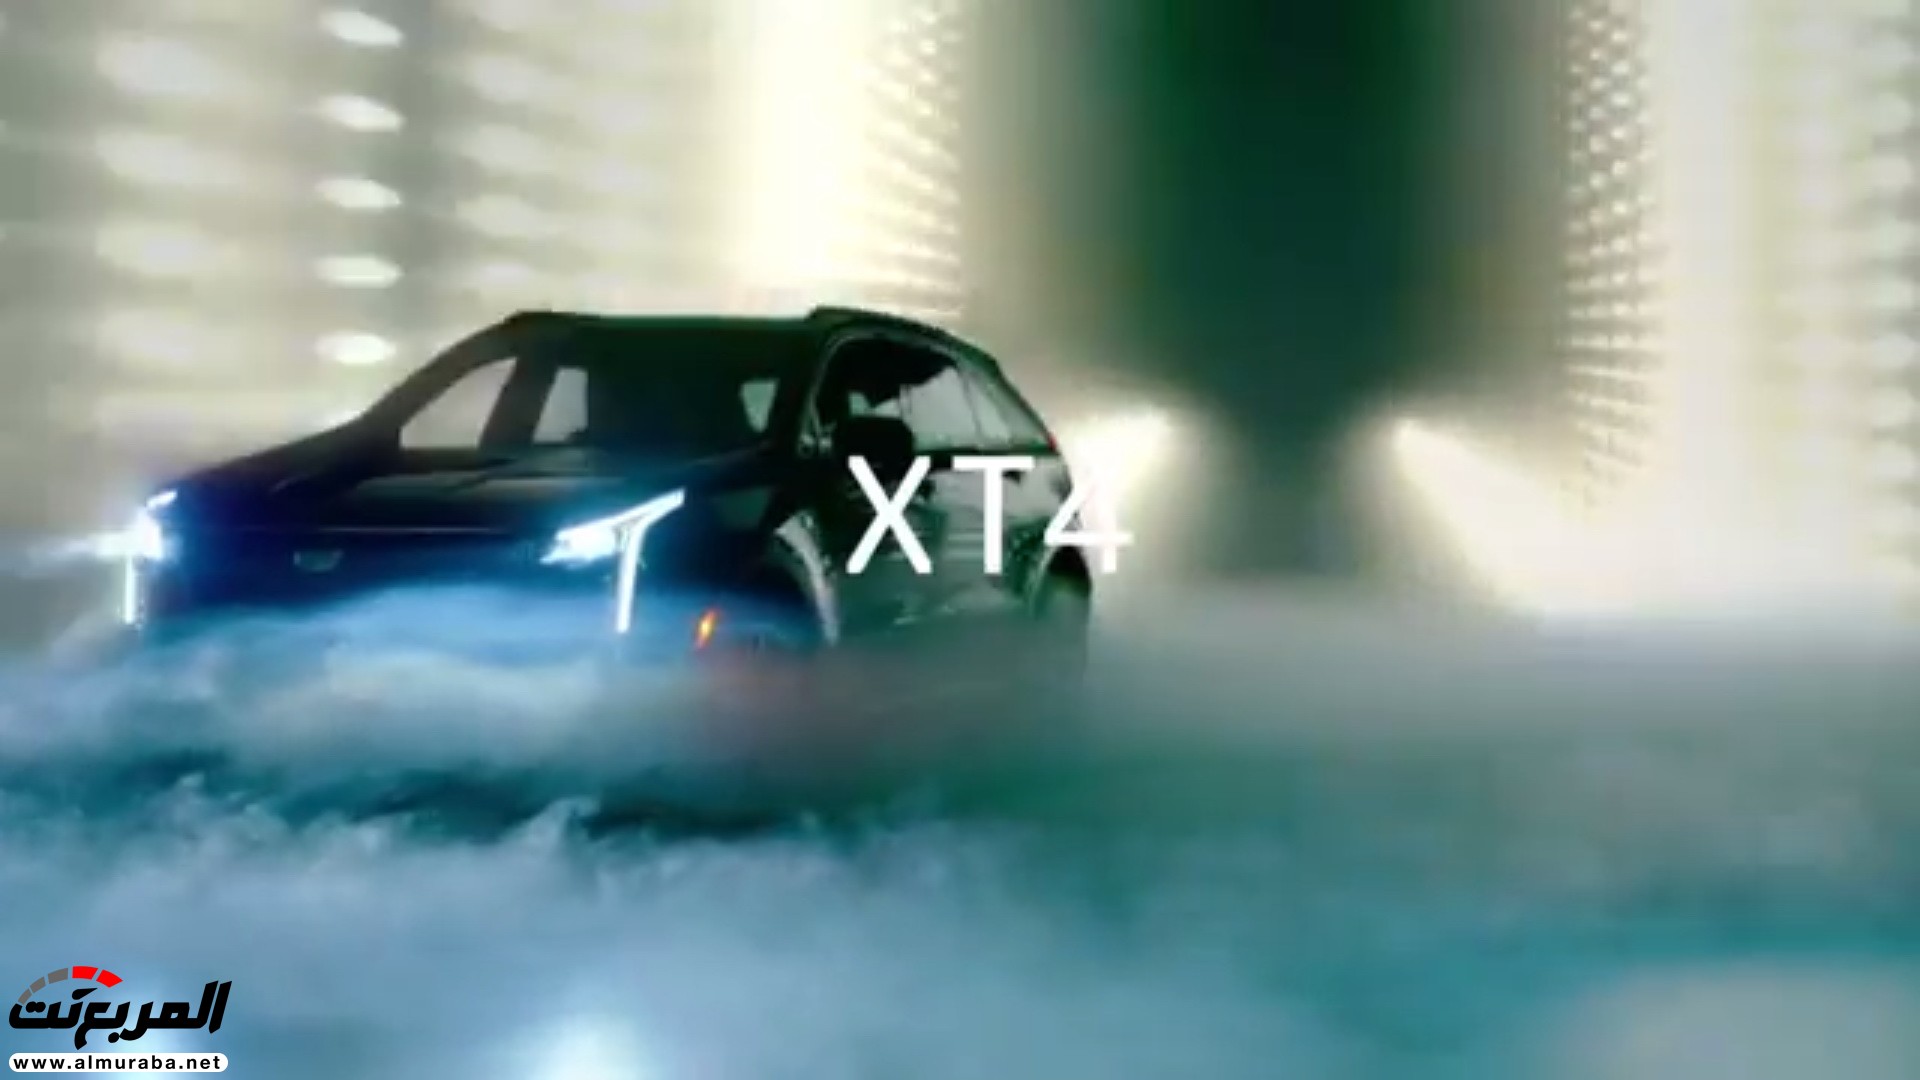 كاديلاك XT4 موديل 2019 تظهر في فيديو وصور تشويقية 13